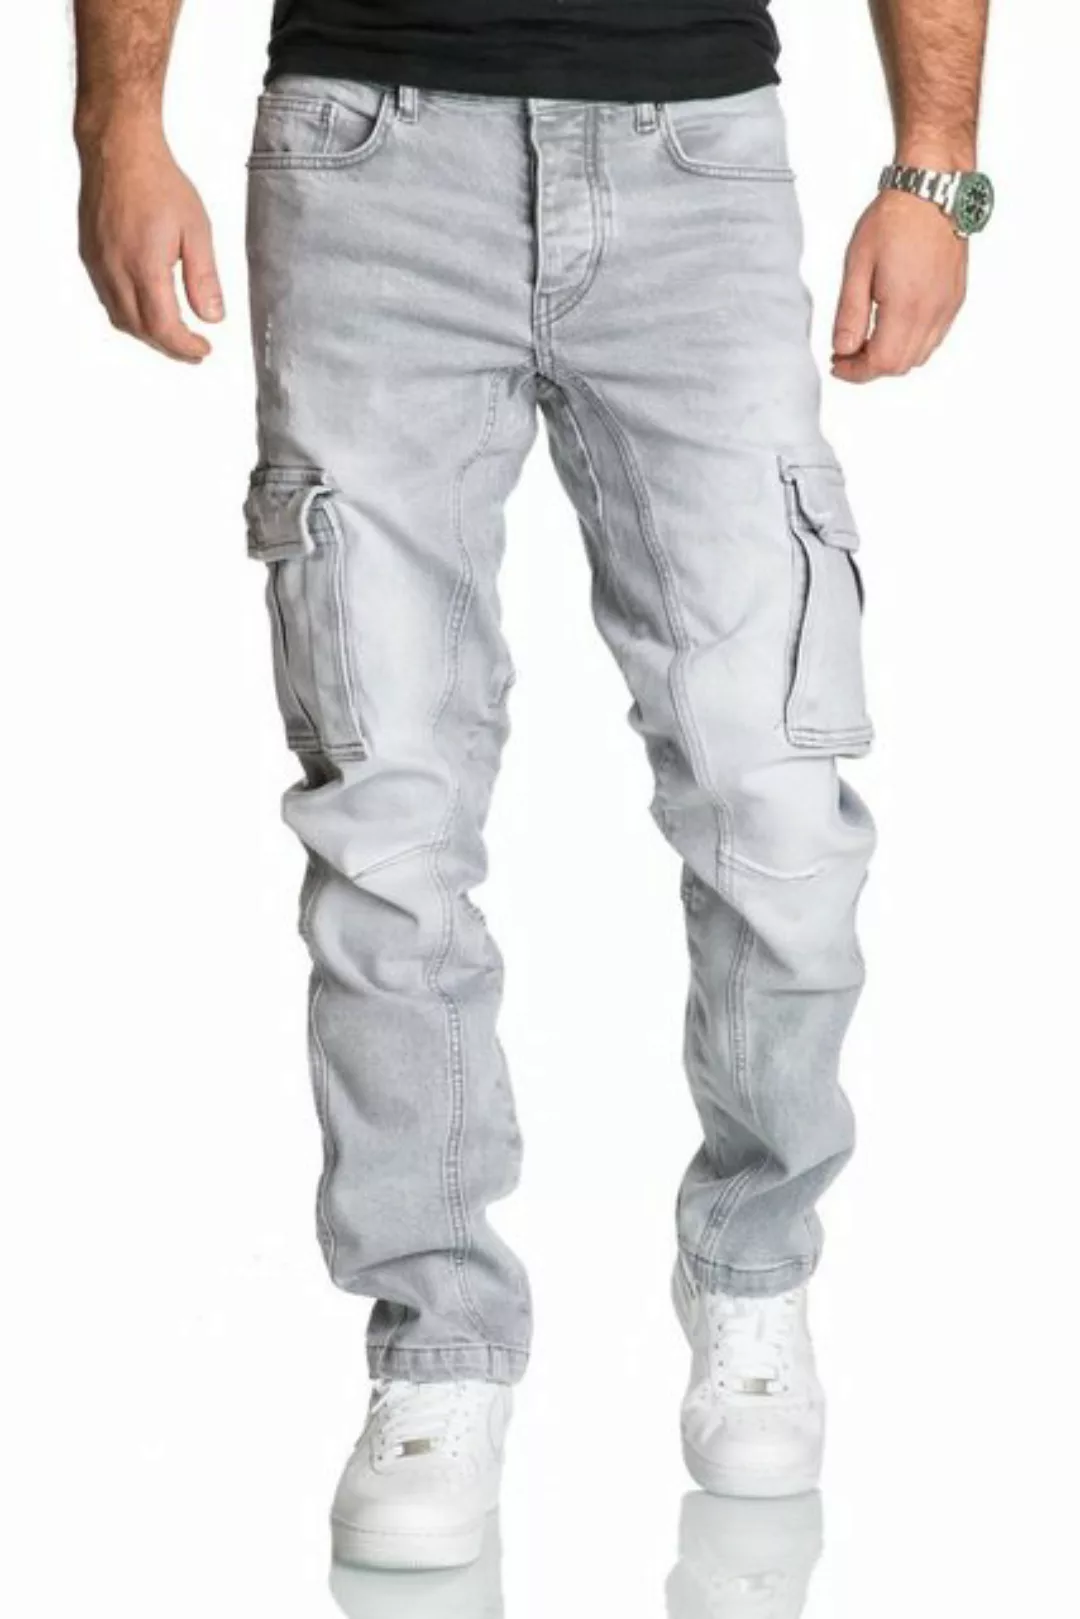 REPUBLIX Straight-Jeans Jeans Hose Herren Regular Fit Denim Cargo Jeans Hos günstig online kaufen